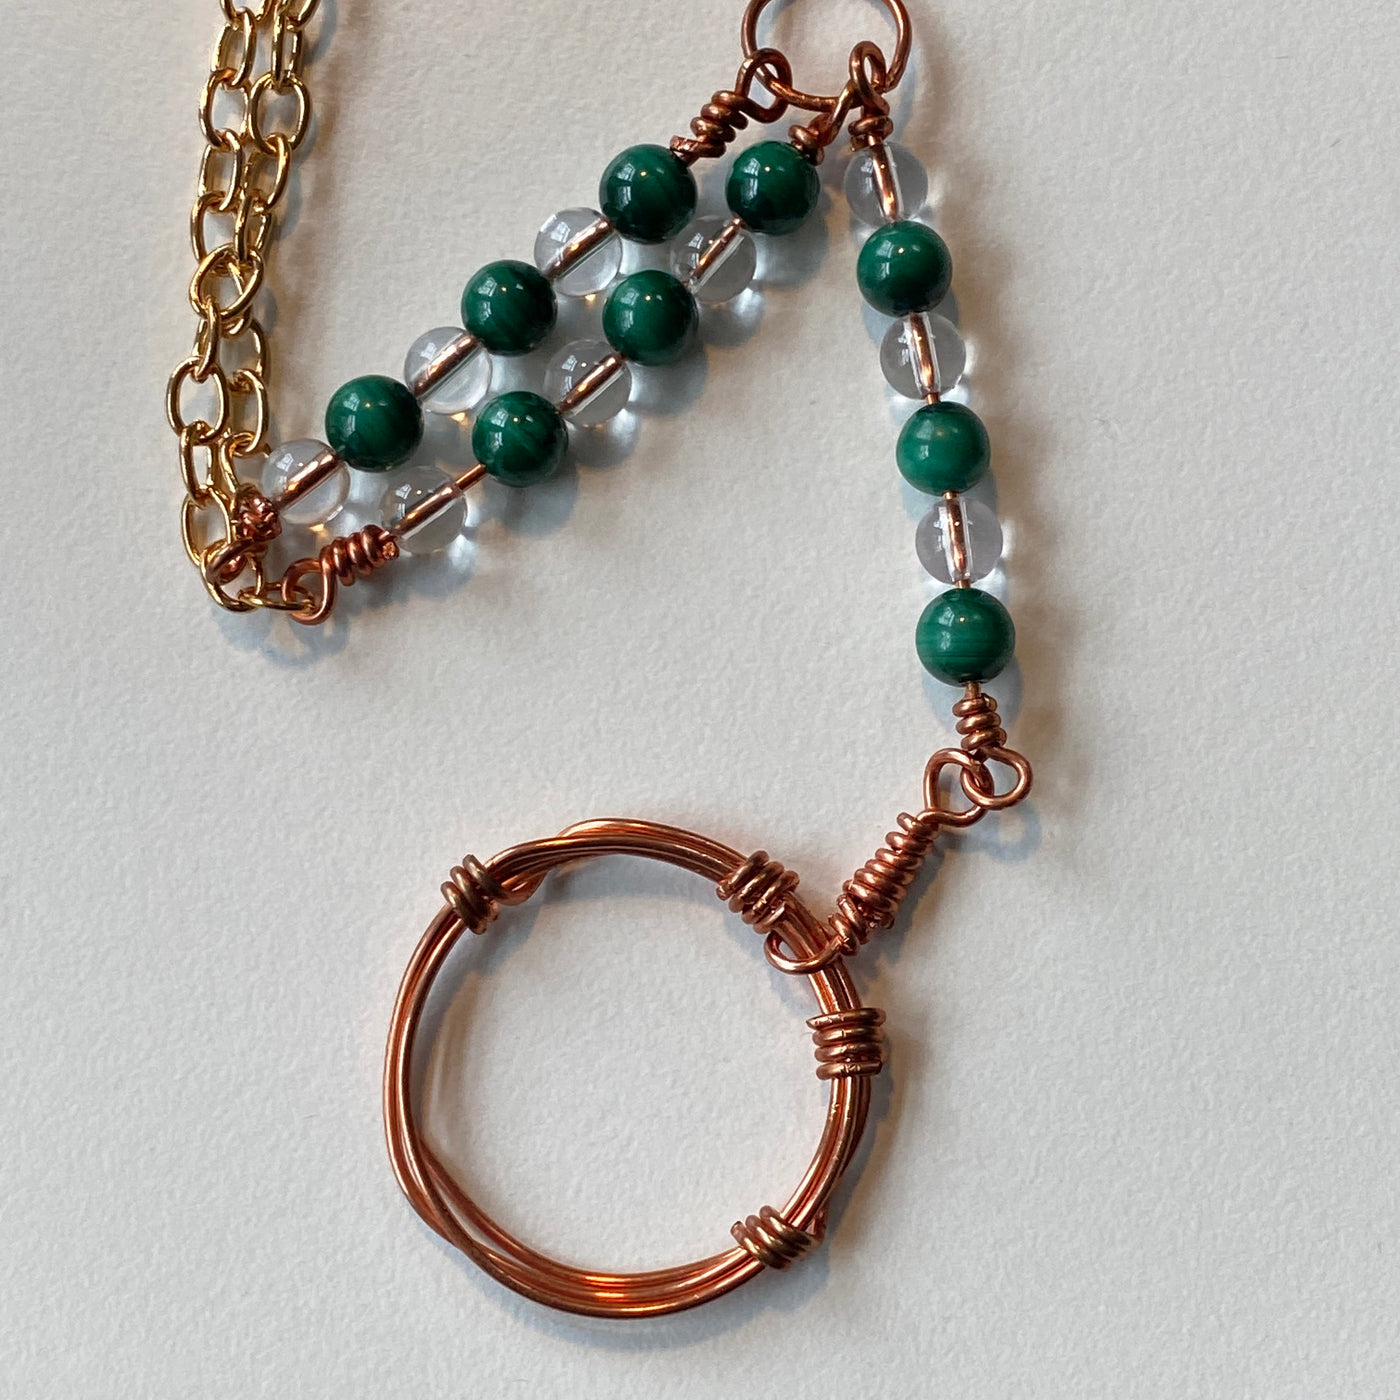 Quartz, malachite, wire and chain pendant